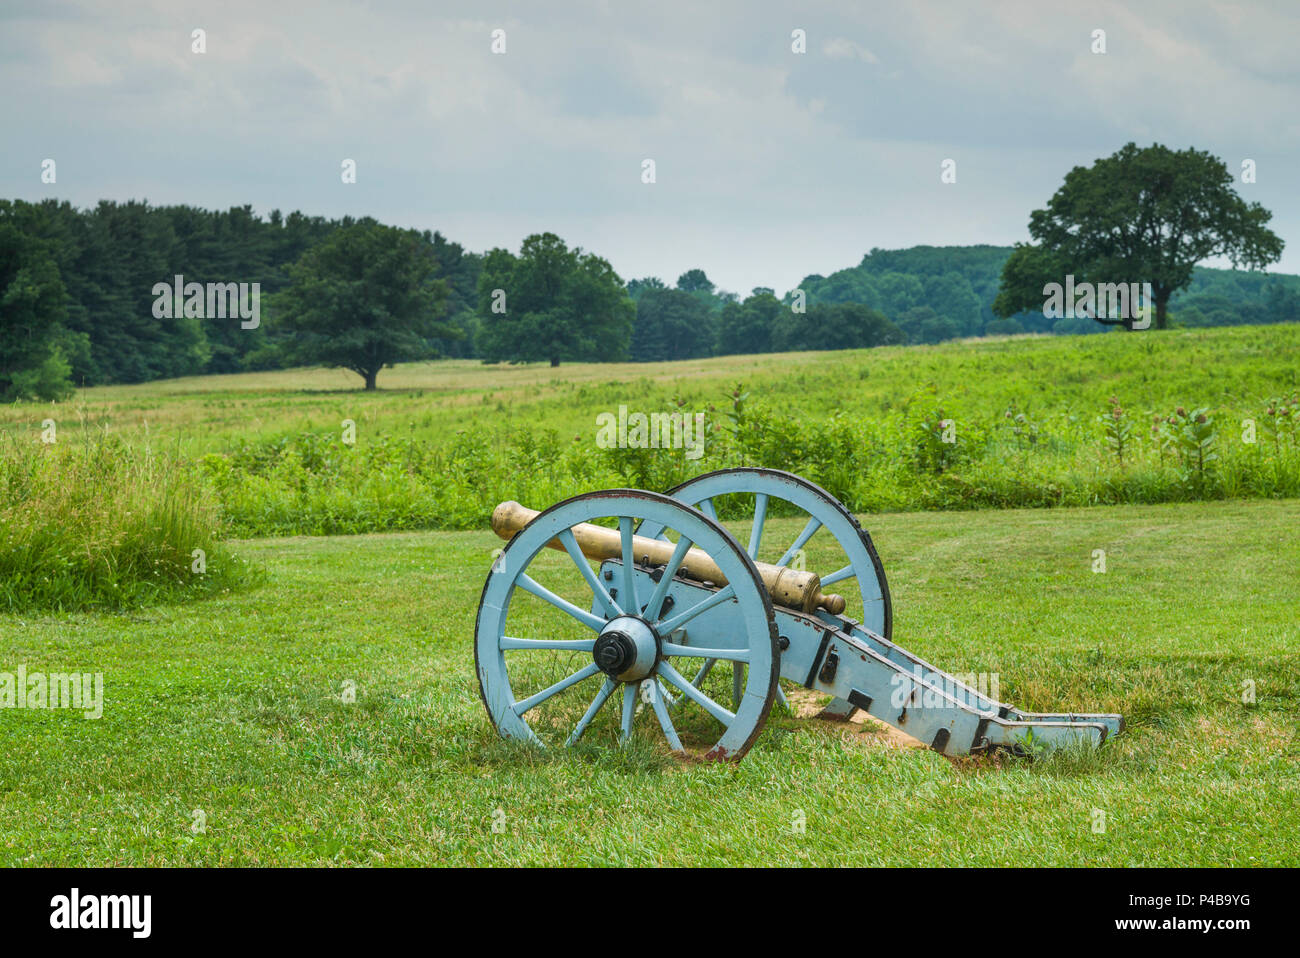 USA, Pennsylvania, König von Preußen, Valley Forge National Historical Park, Schlachtfeld der amerikanischen revolutionären Krieg, Muhlenberg Brigade Kanone Stockfoto